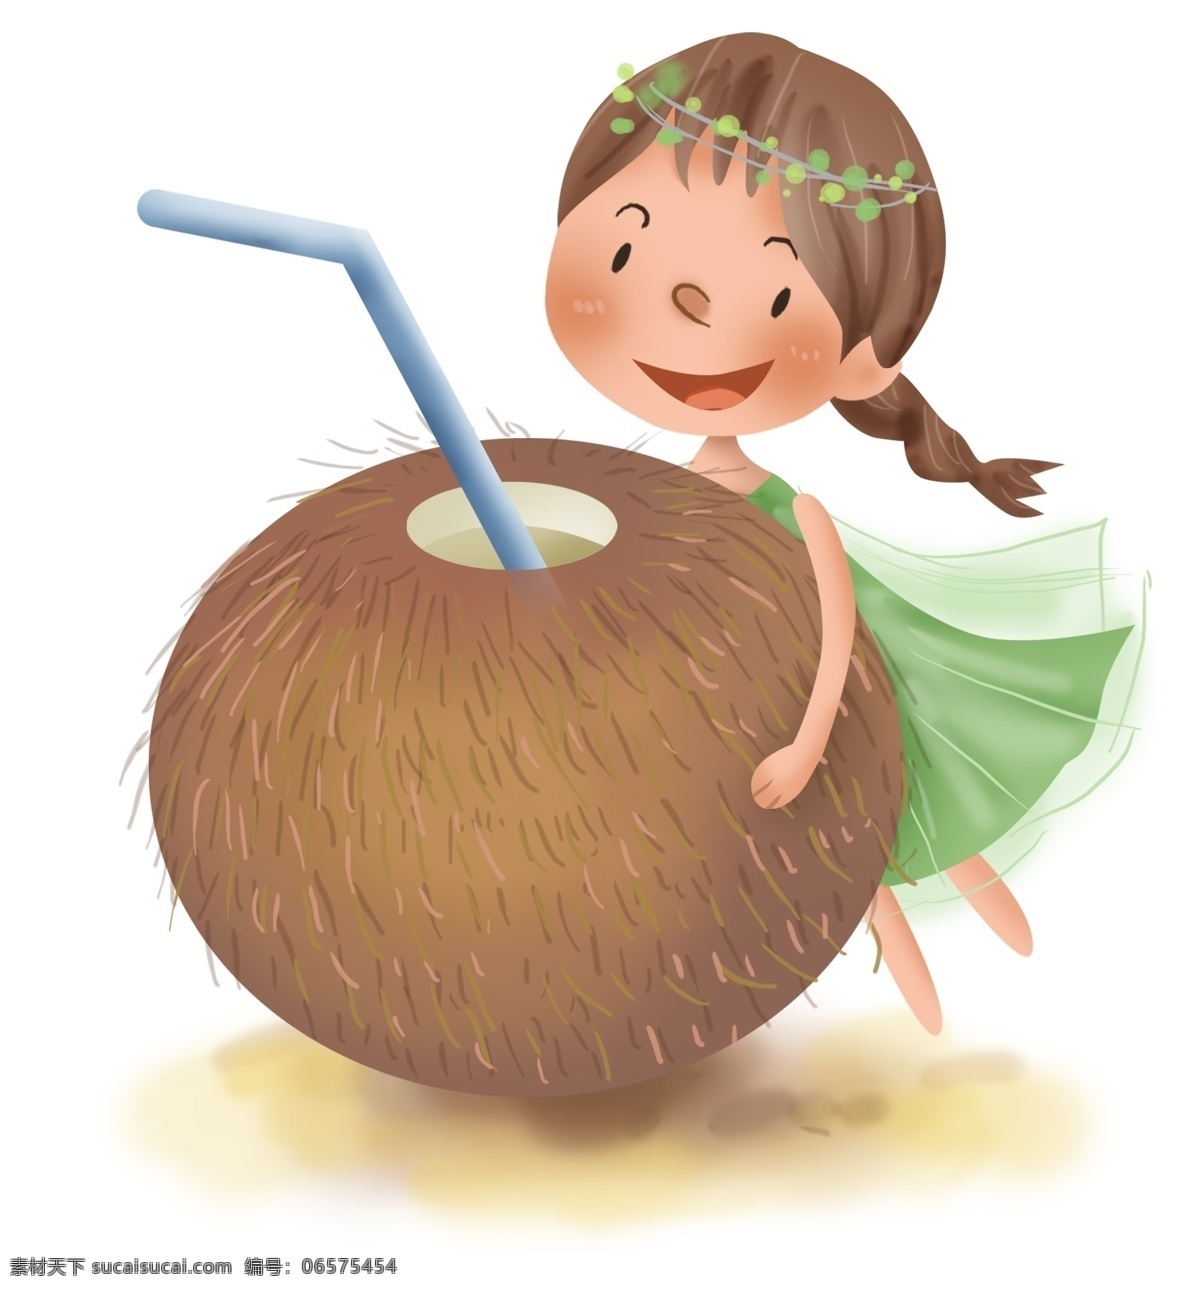 夏季 椰子汁 小女孩 吃椰子 小暑 入夏 大暑 炎热 解暑水果 幼儿园 儿童 椰子